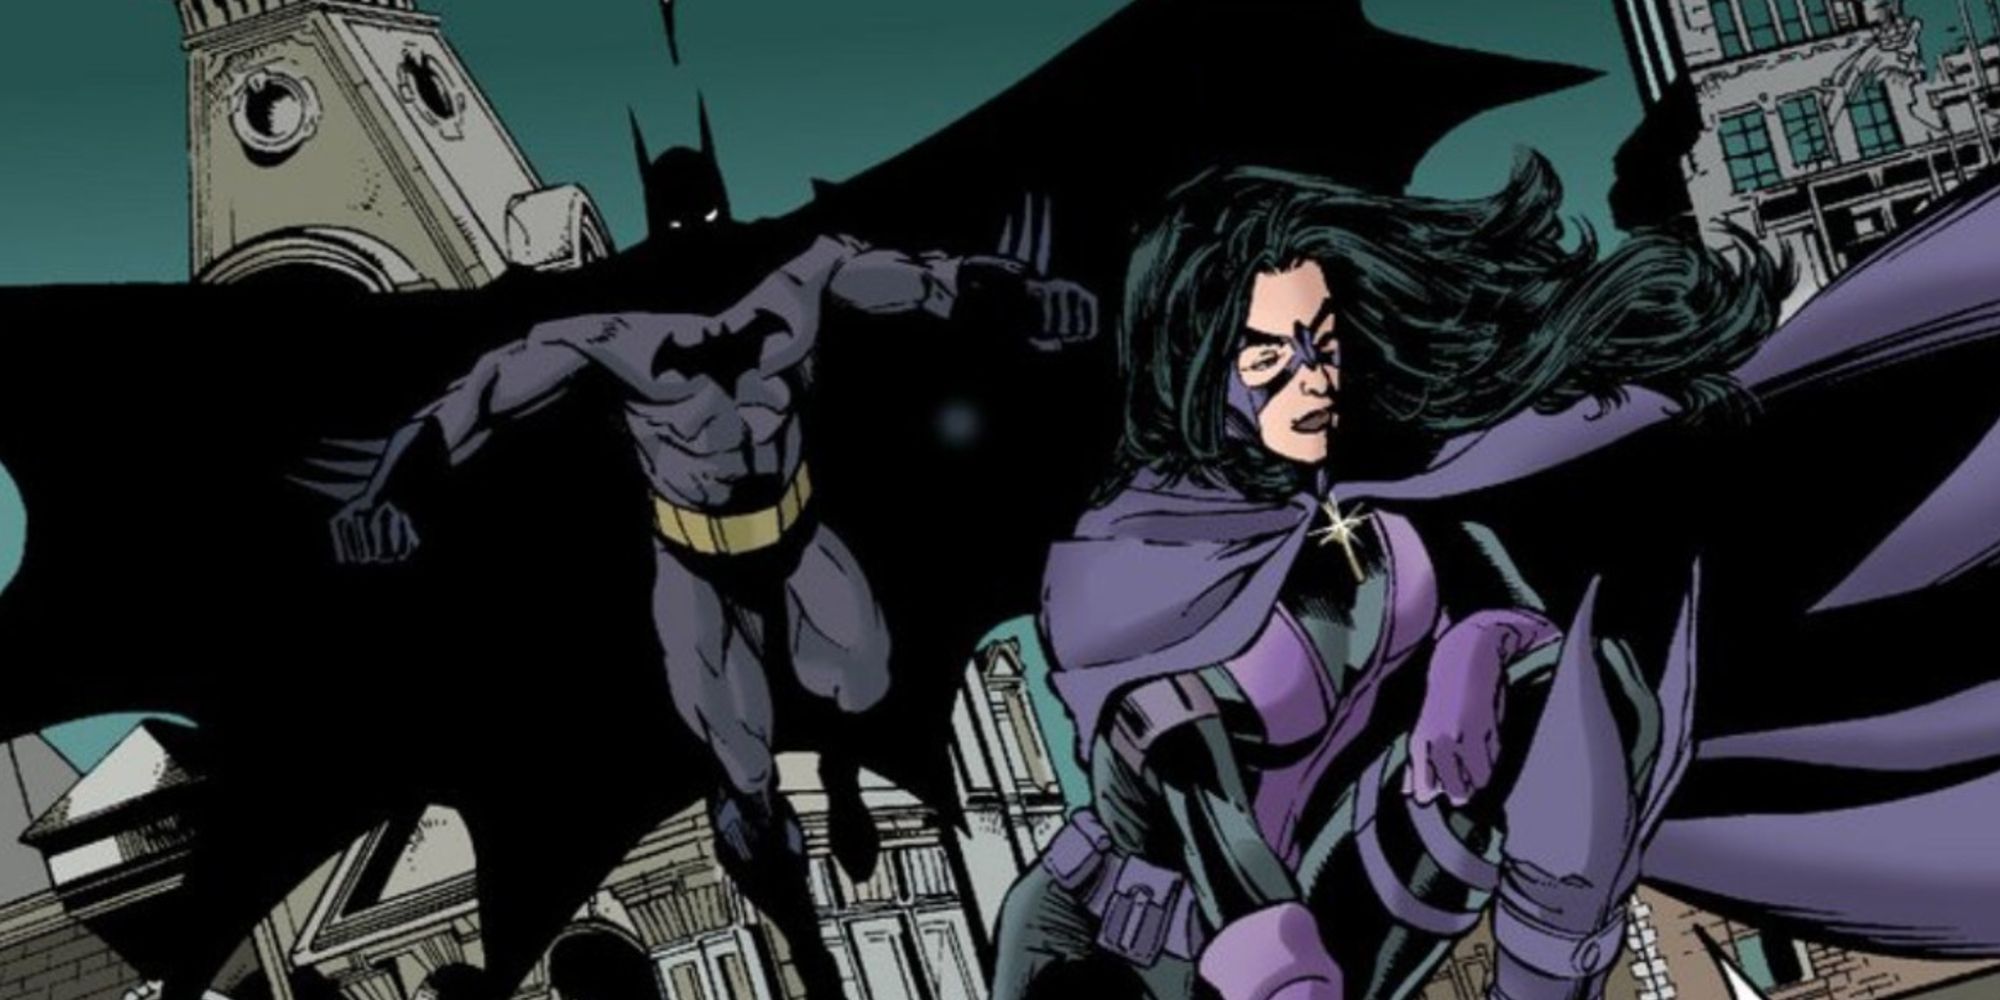 Batman approaching Huntress in DC comics